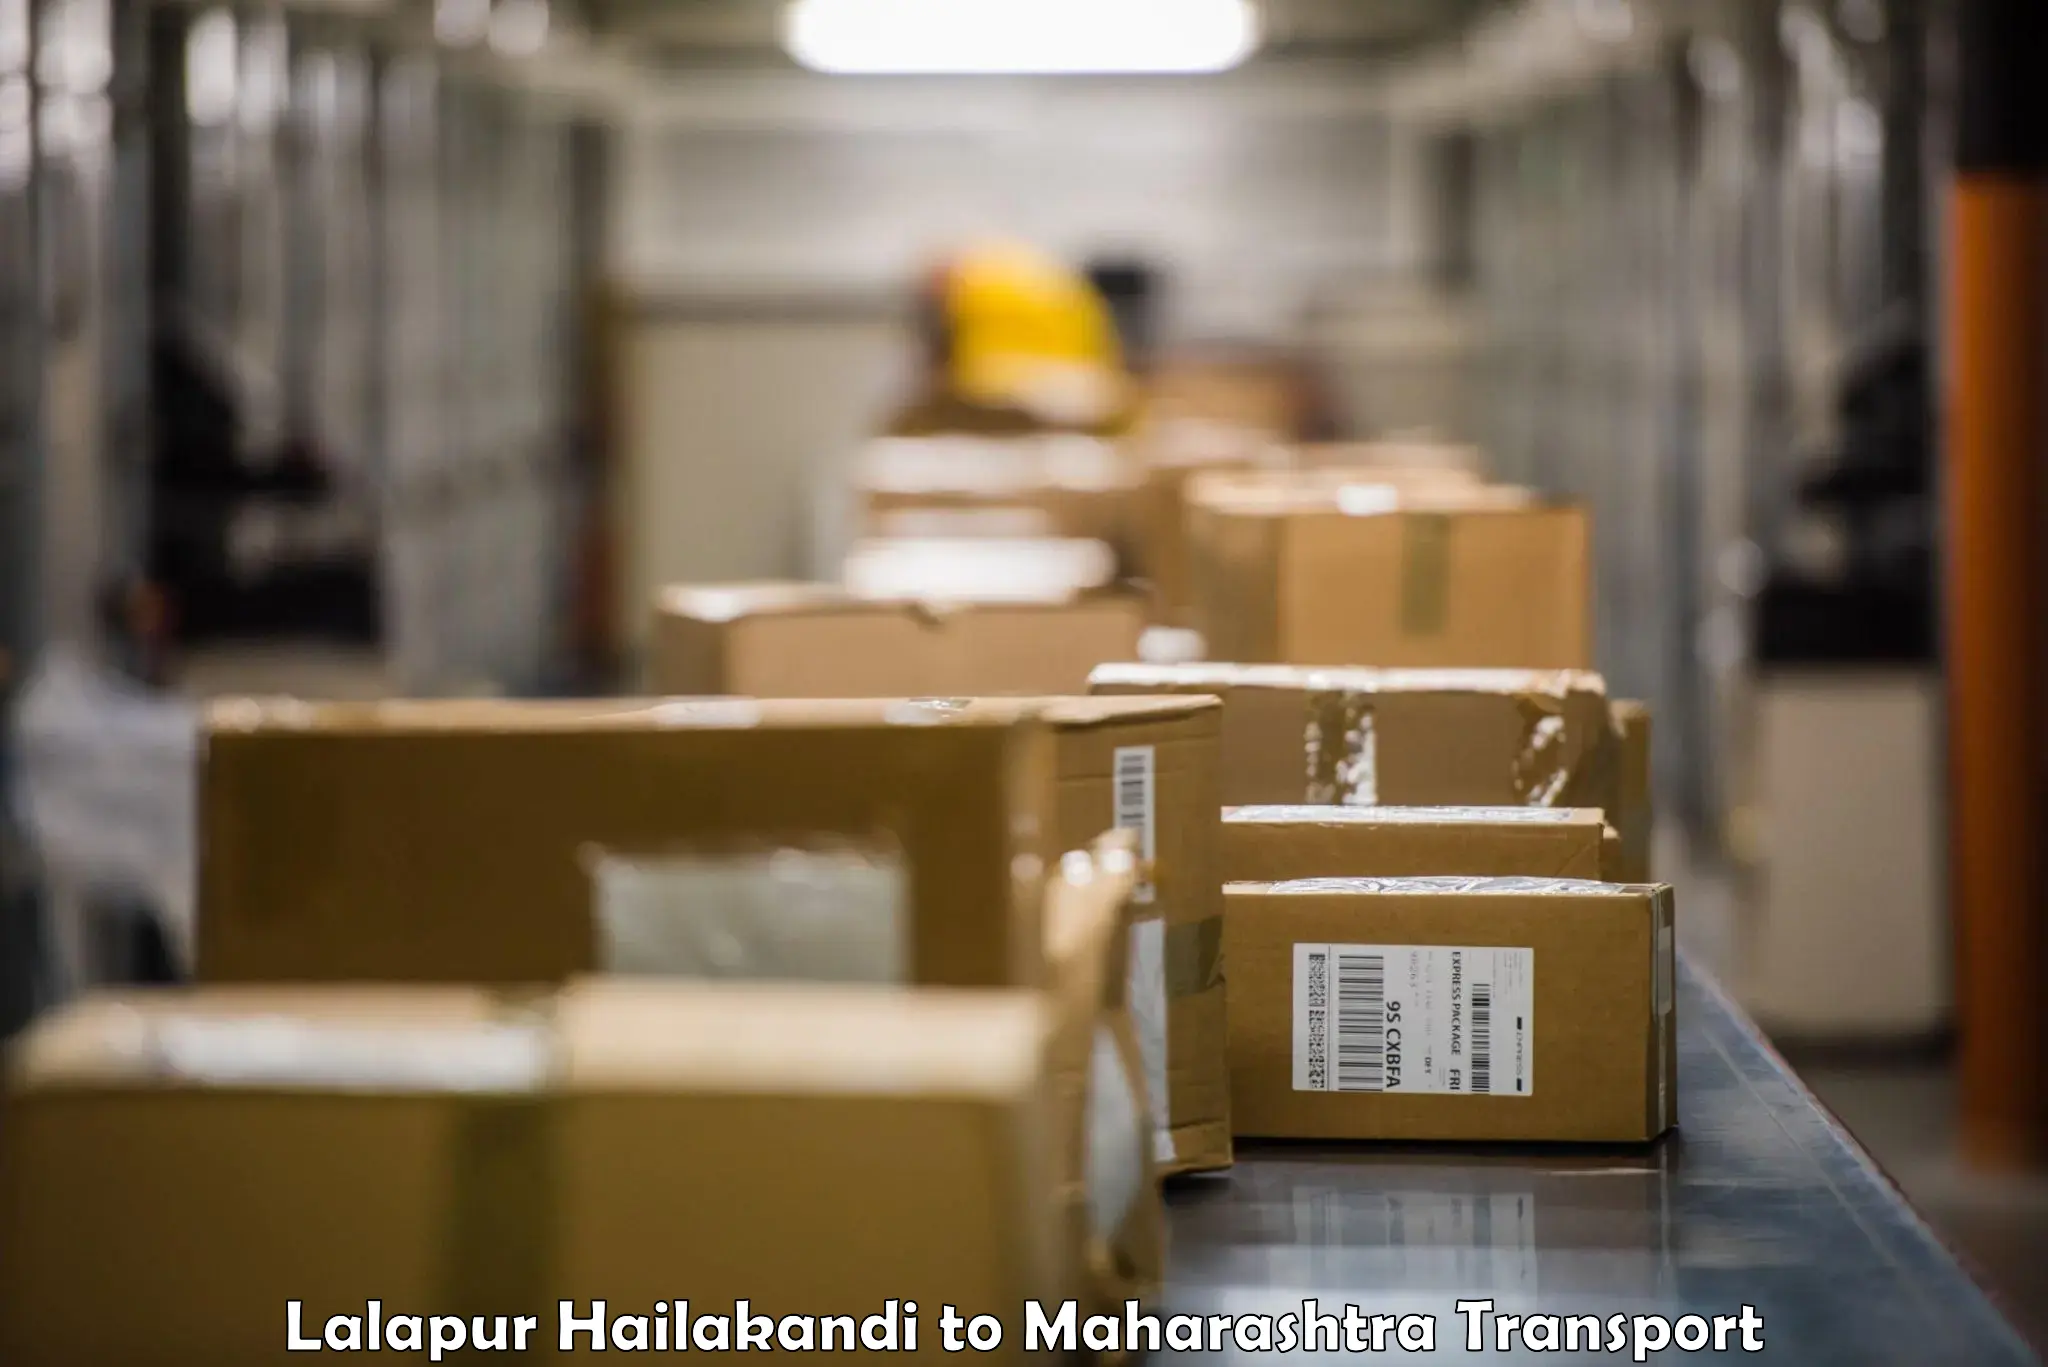 Nearest transport service Lalapur Hailakandi to Shivajinagar